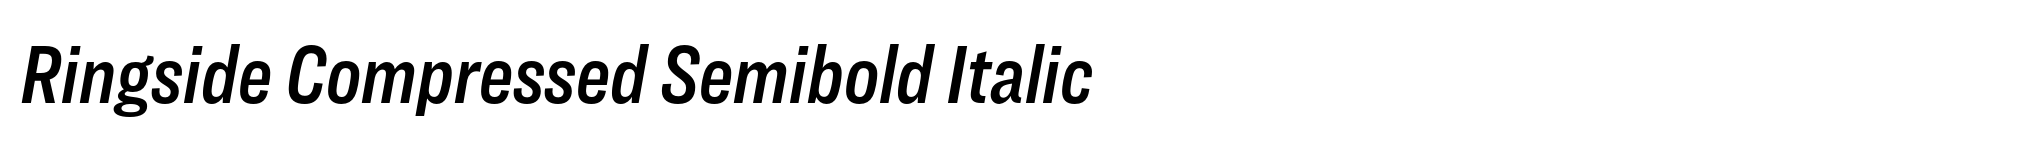 Ringside Compressed Semibold Italic image